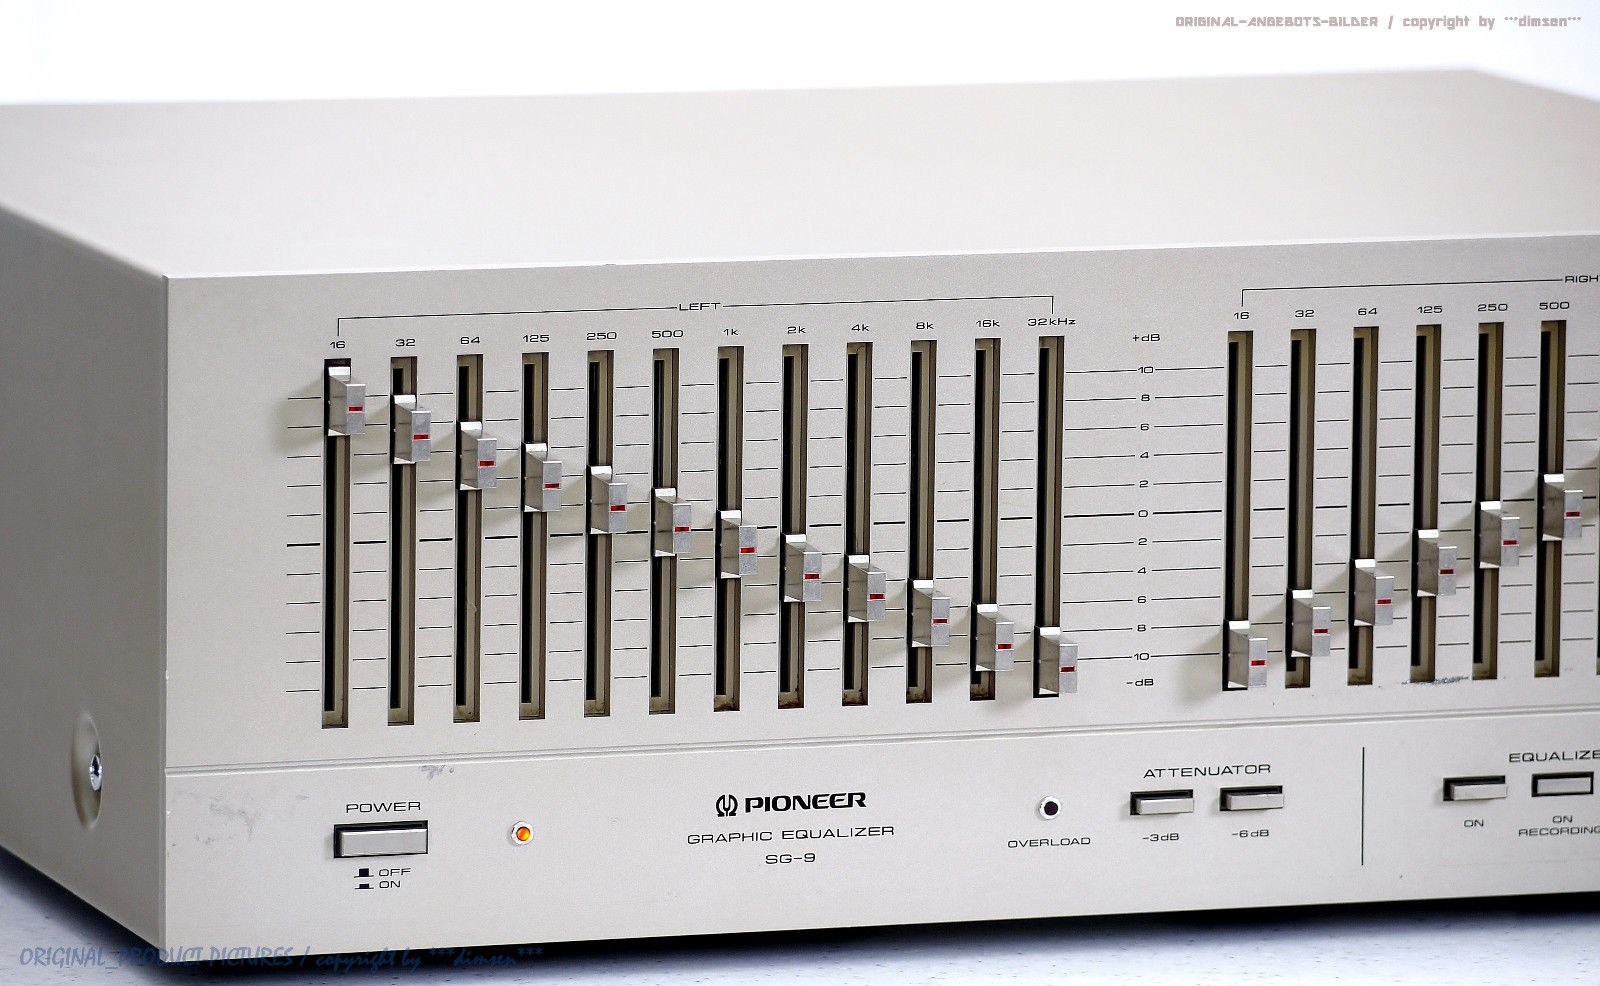 先锋 PIONEER SG-9500 图示均衡器（1978） – Lark Club